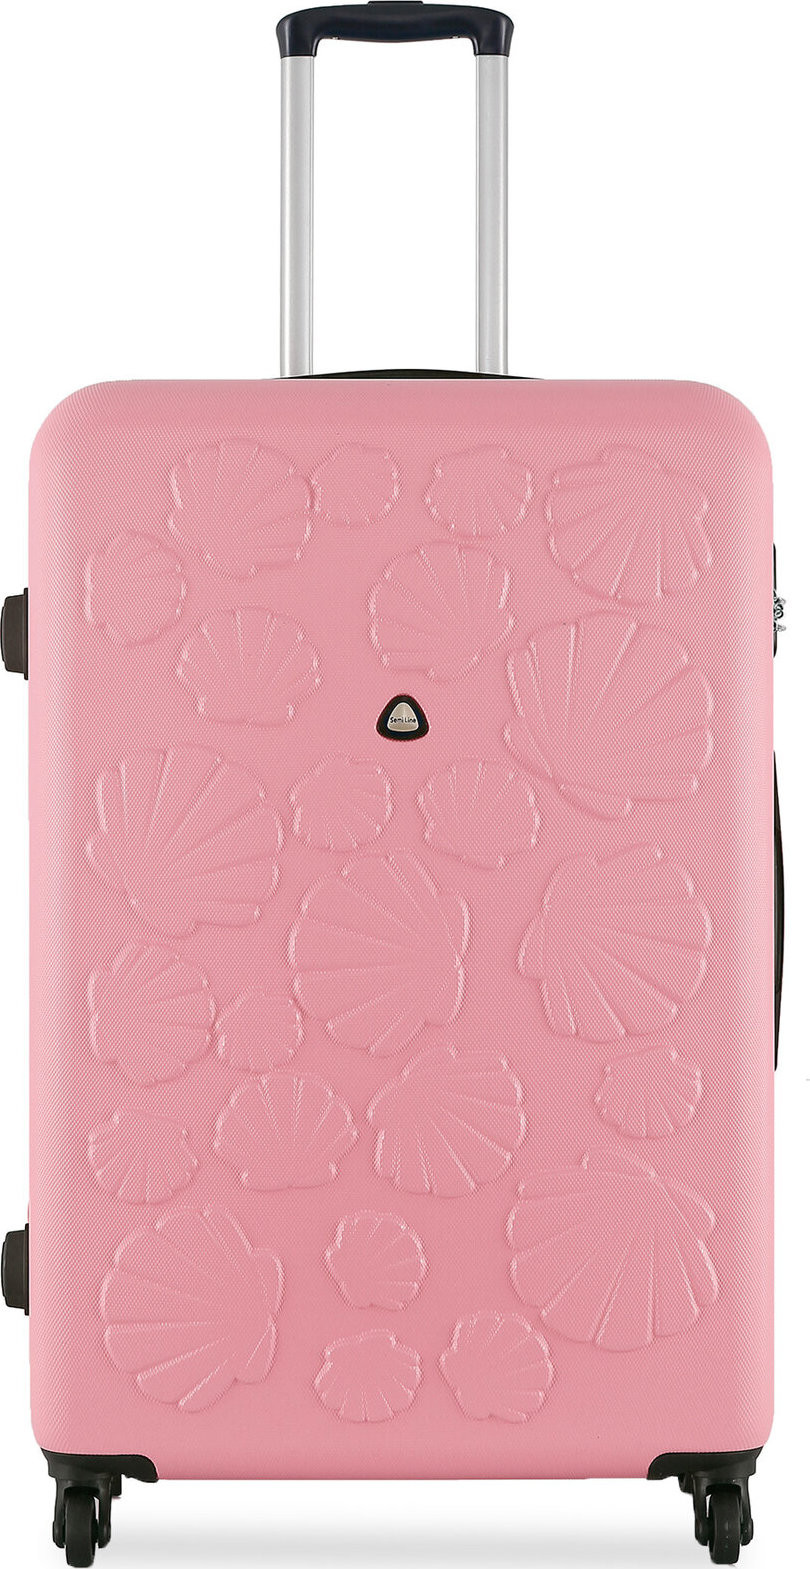 Velký kufr Semi Line T5697-3 Blady Róż